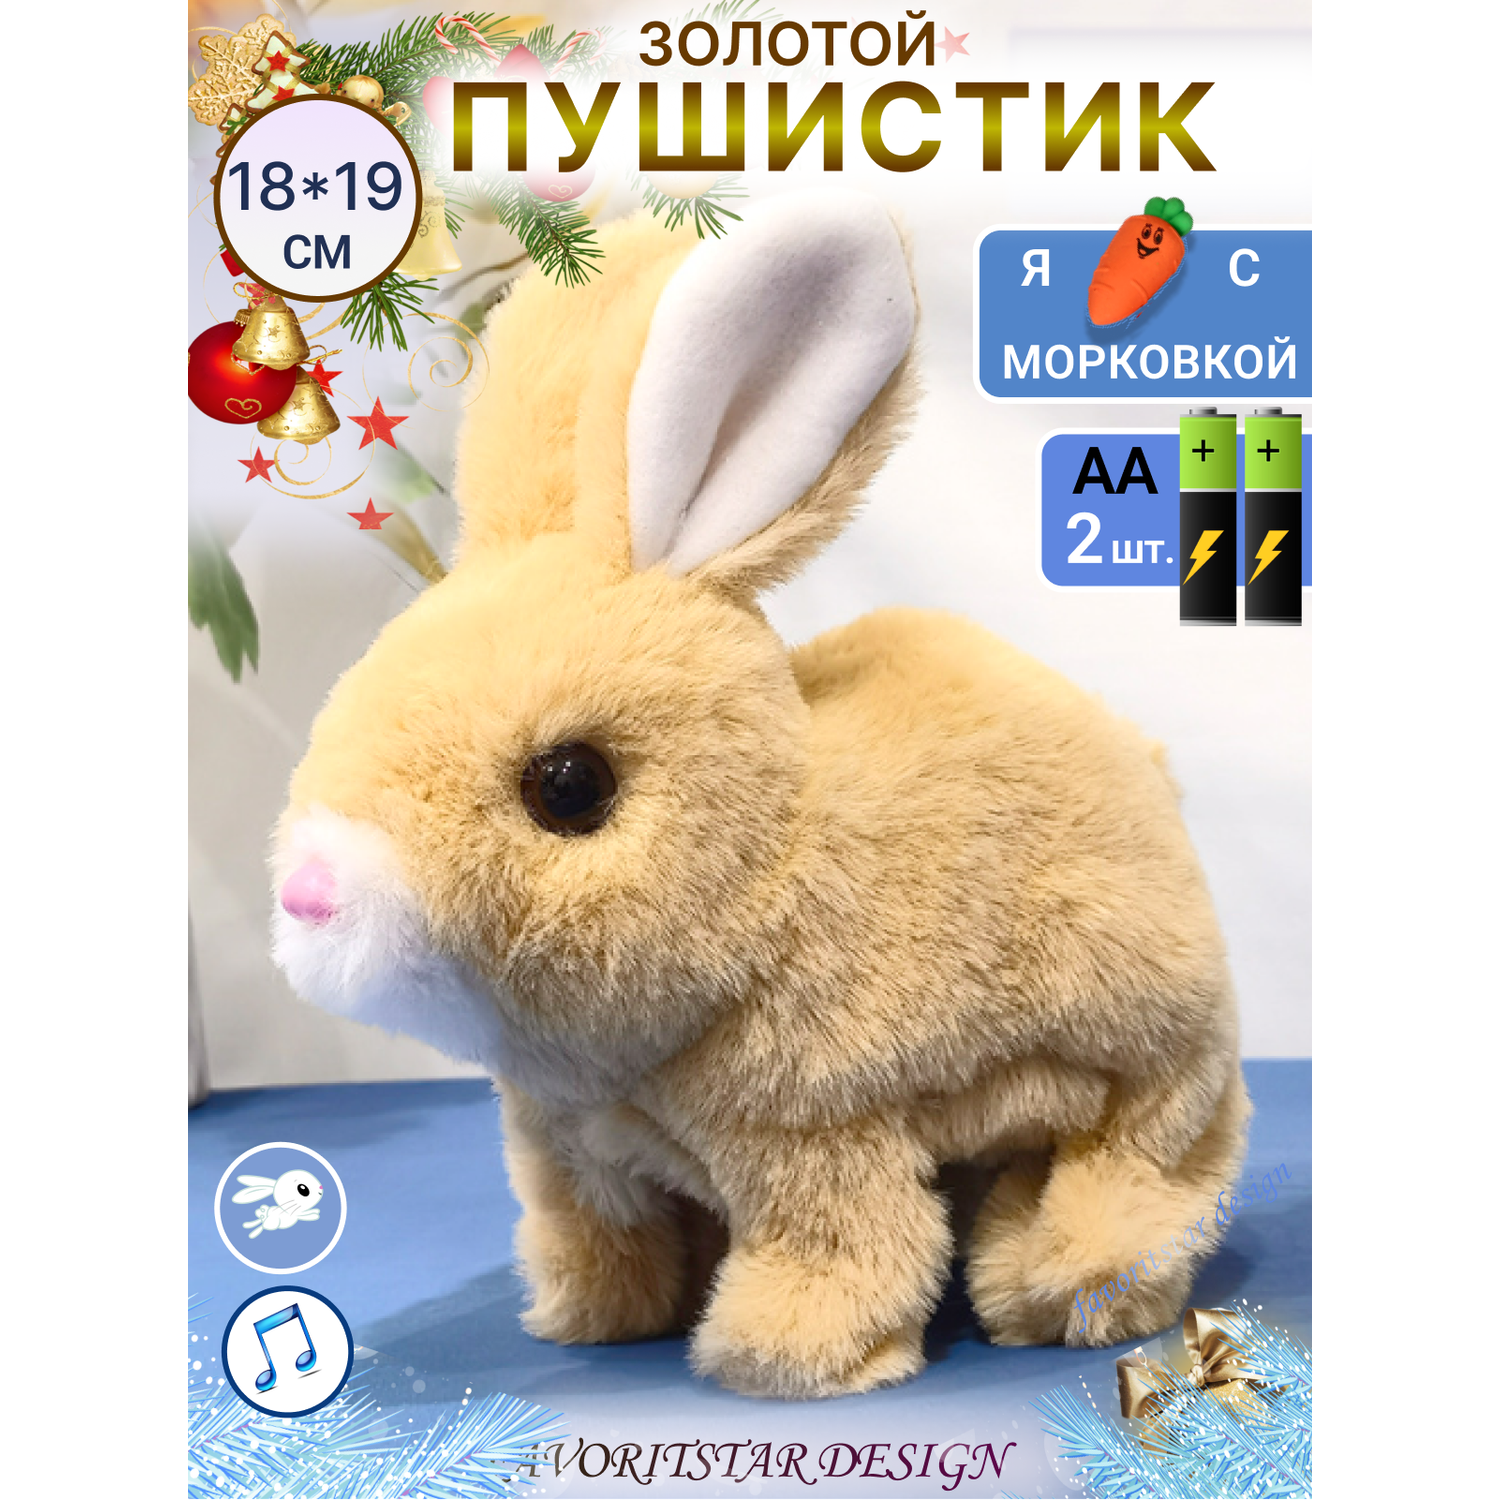 Интерактивная игрушка мягкая FAVORITSTAR DESIGN Пушистый зайчик коричневый с морковкой - фото 1